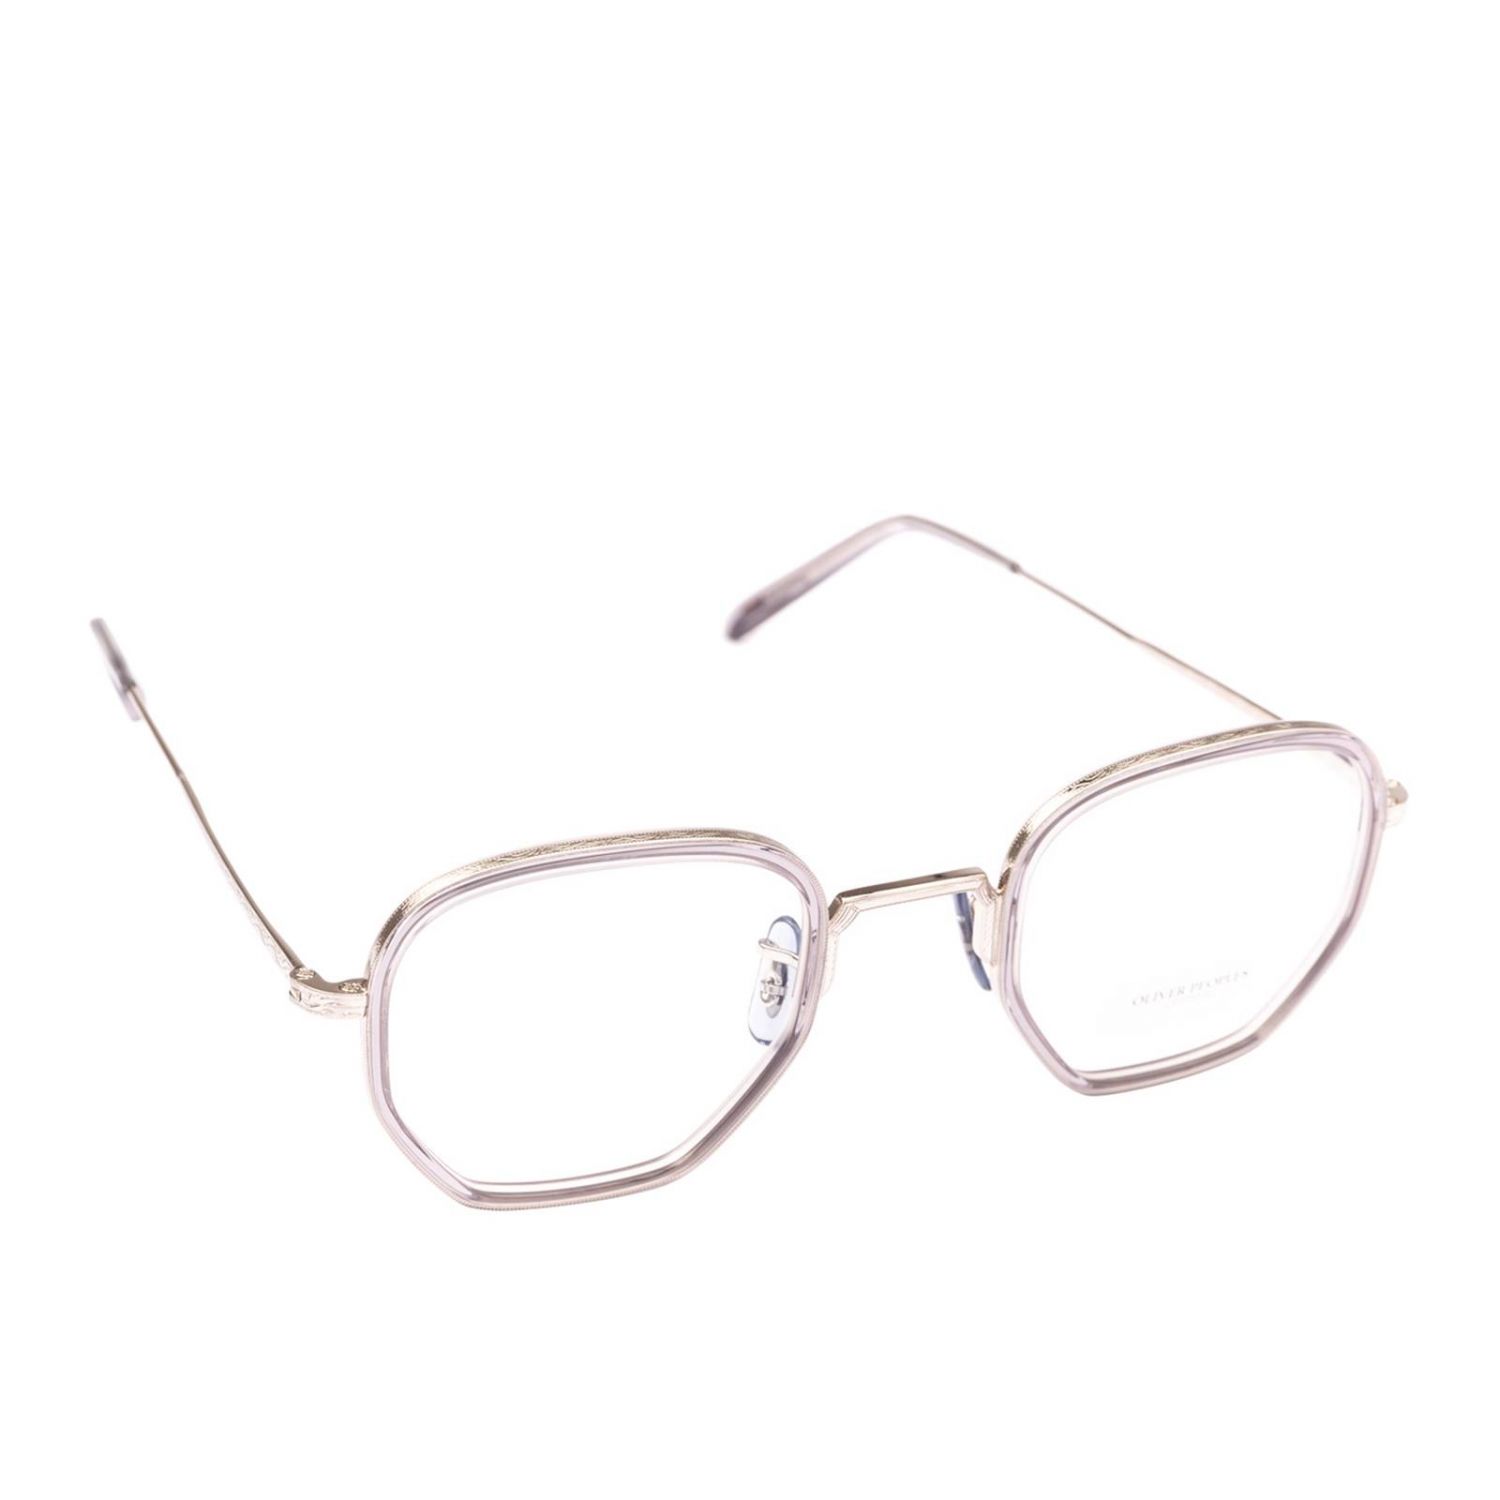 Eyewear men Oliver Peoples | Glasses Oliver Peoples Men Grey | Glasses ...